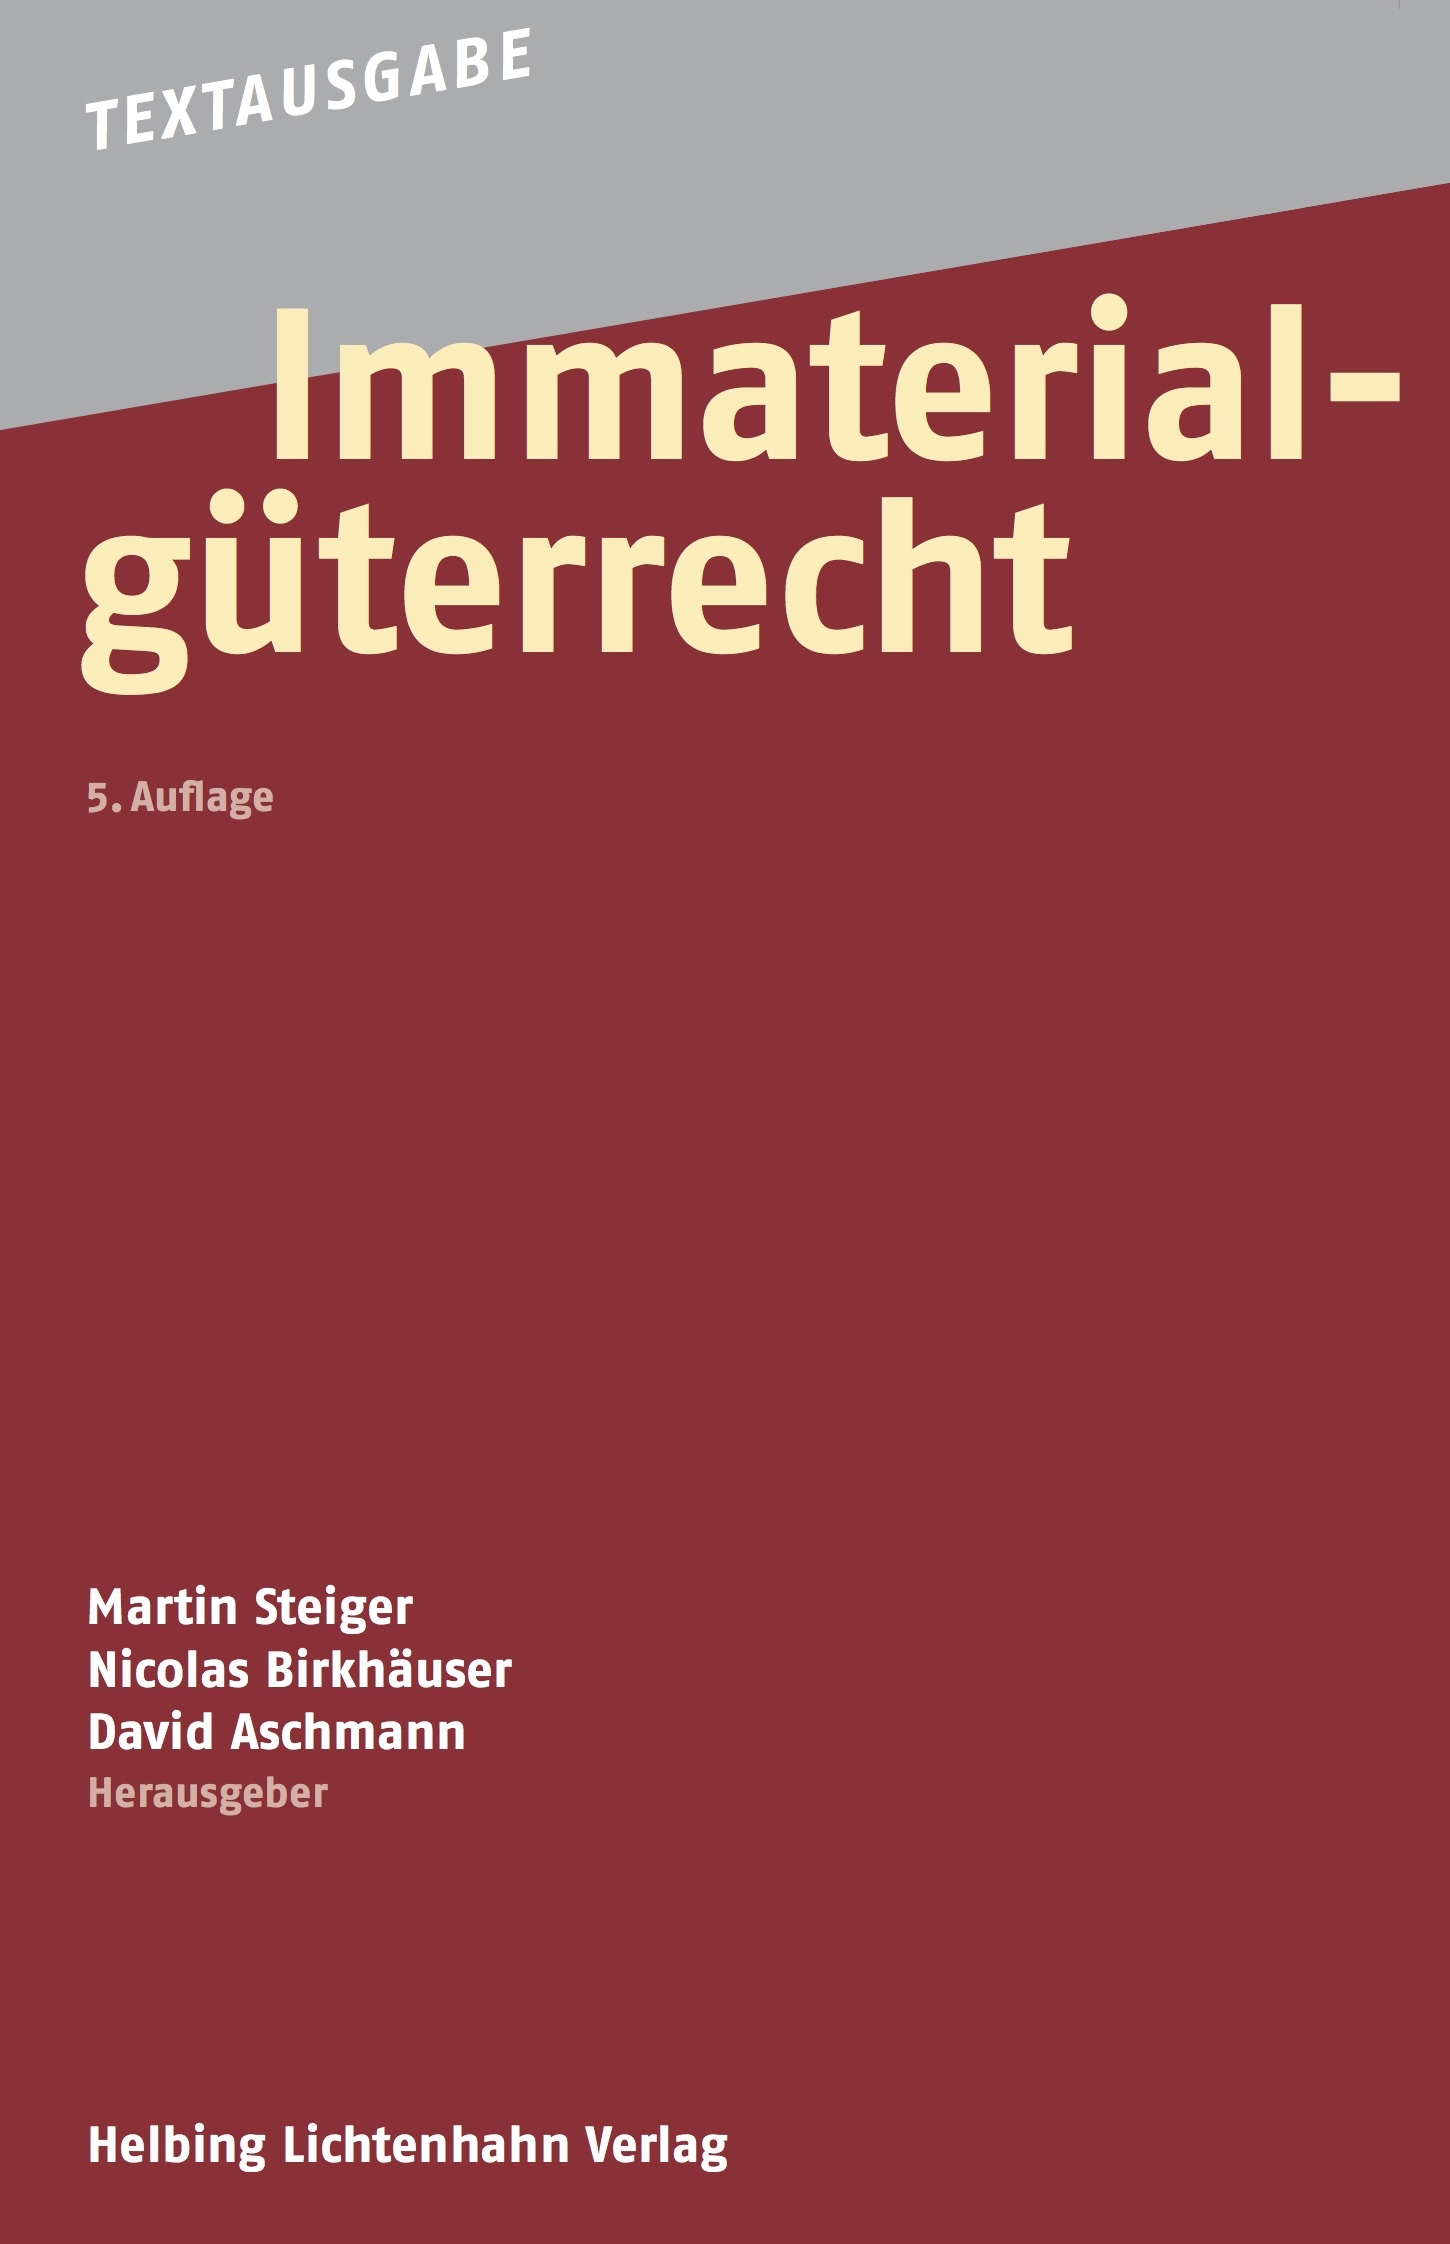 Bild: Textausgabe Immaterialgüterrecht (Cover der 5. Auflage)